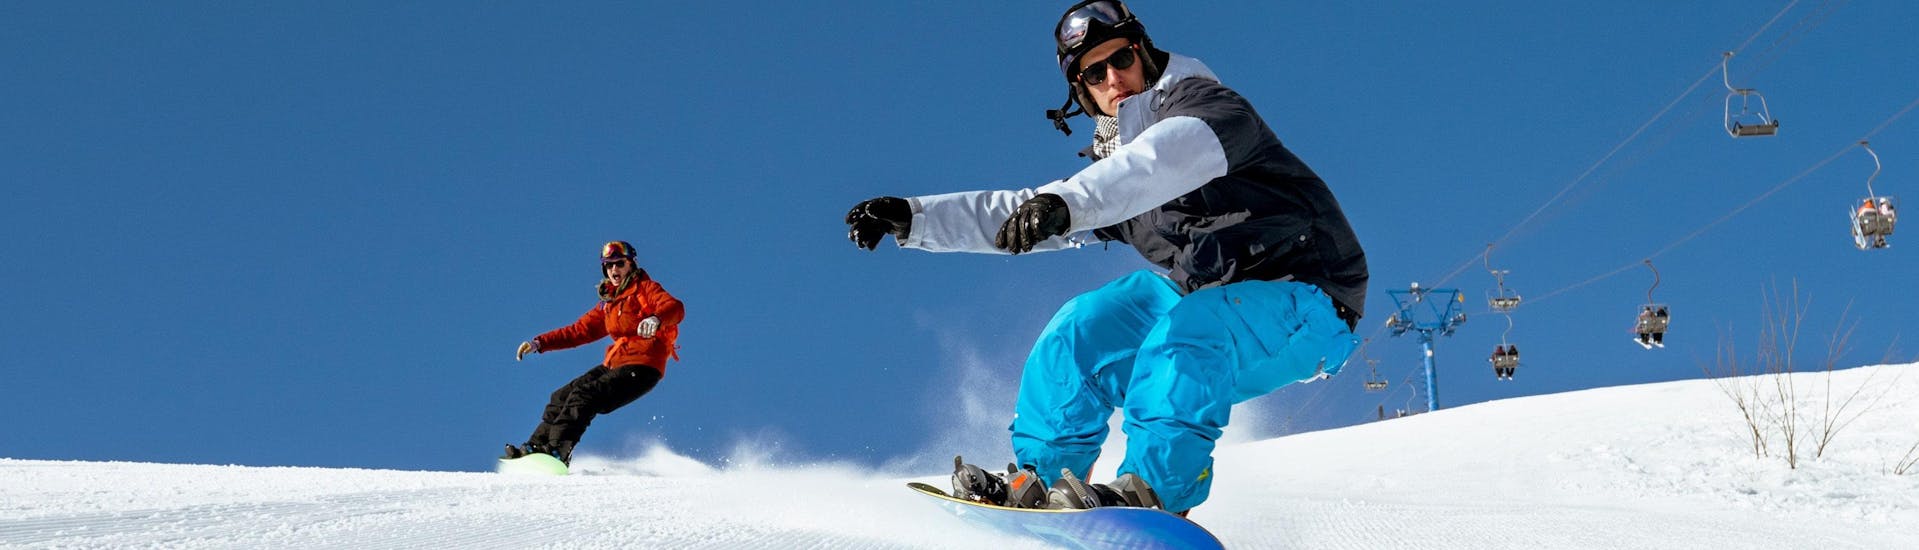 Zwei Snowboarder brettern bei ihrem Snowboardkurs in Oberösterreich eine frisch präparierte Piste hinunter.